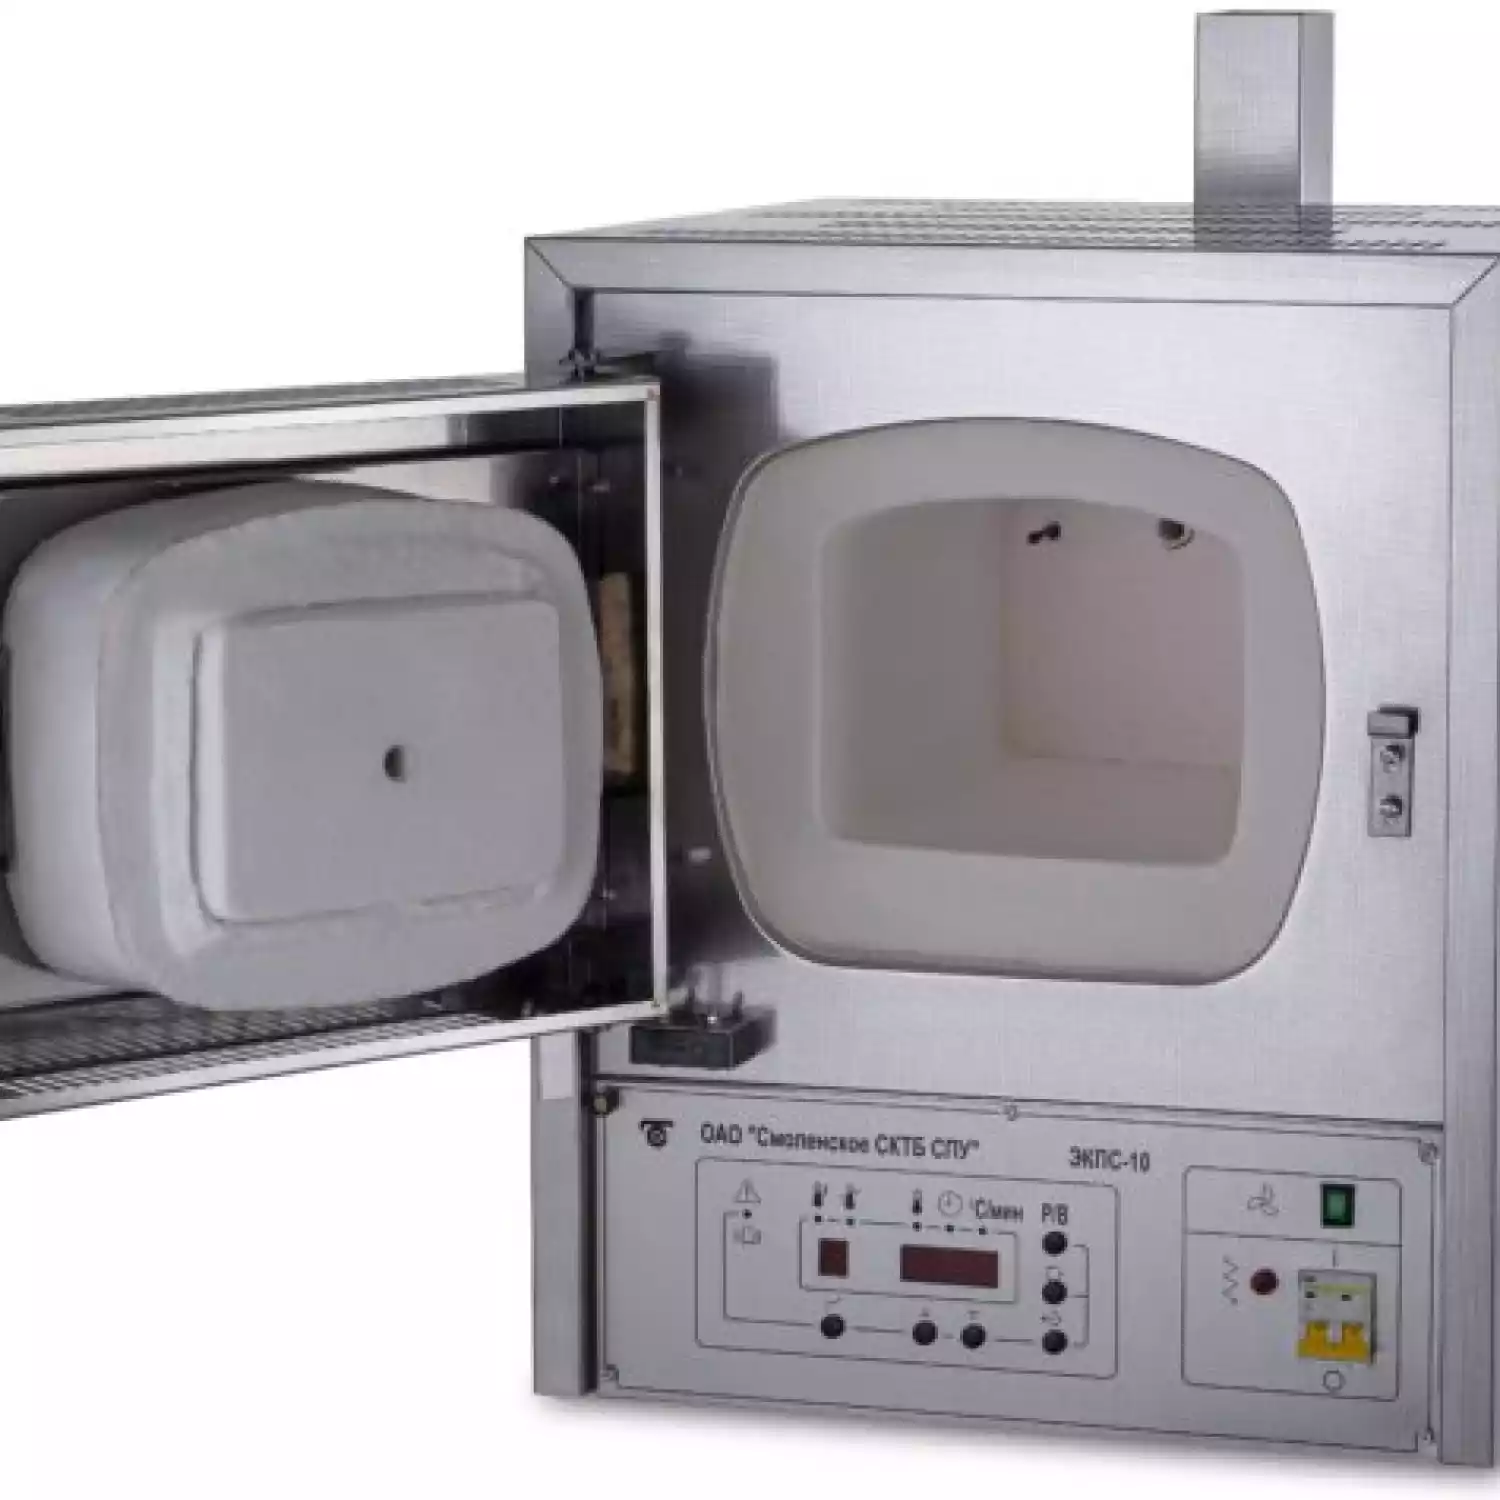 Муфельная печь ЭКПС-10 (многоступенчатый регулятор; 10 л; Т до +1100 °С) с вытяжкой, нержавеющая сталь) - 1